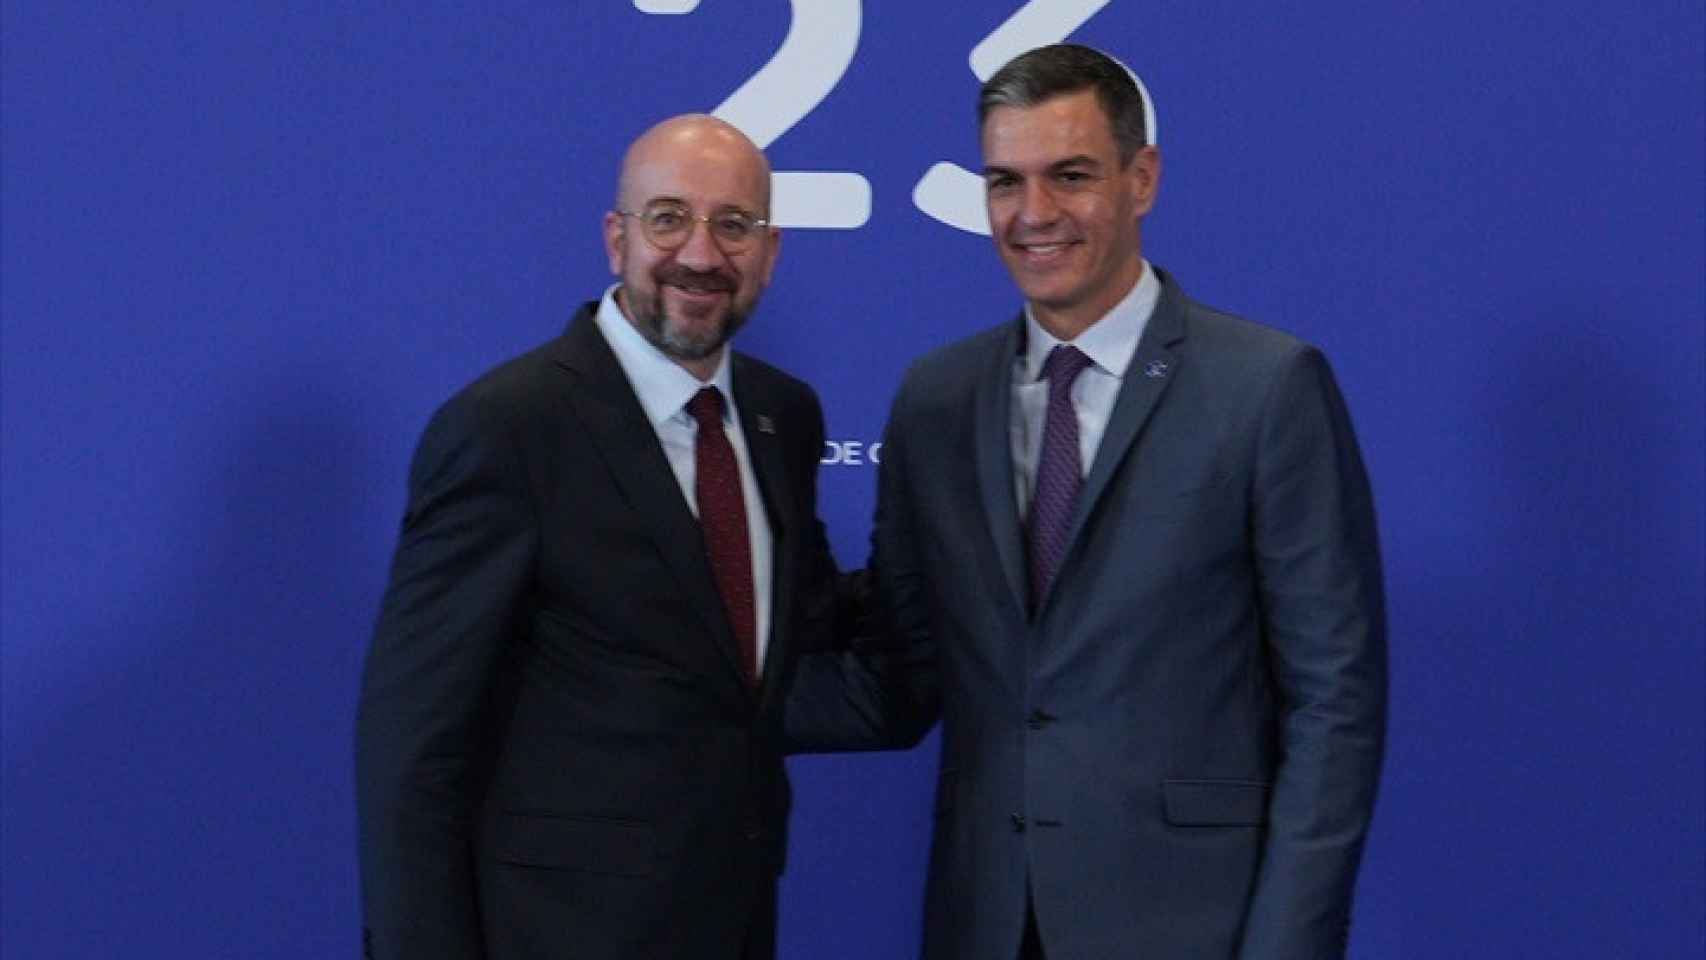 Pedro Sánchez y Charles Michel en rueda de prensa.